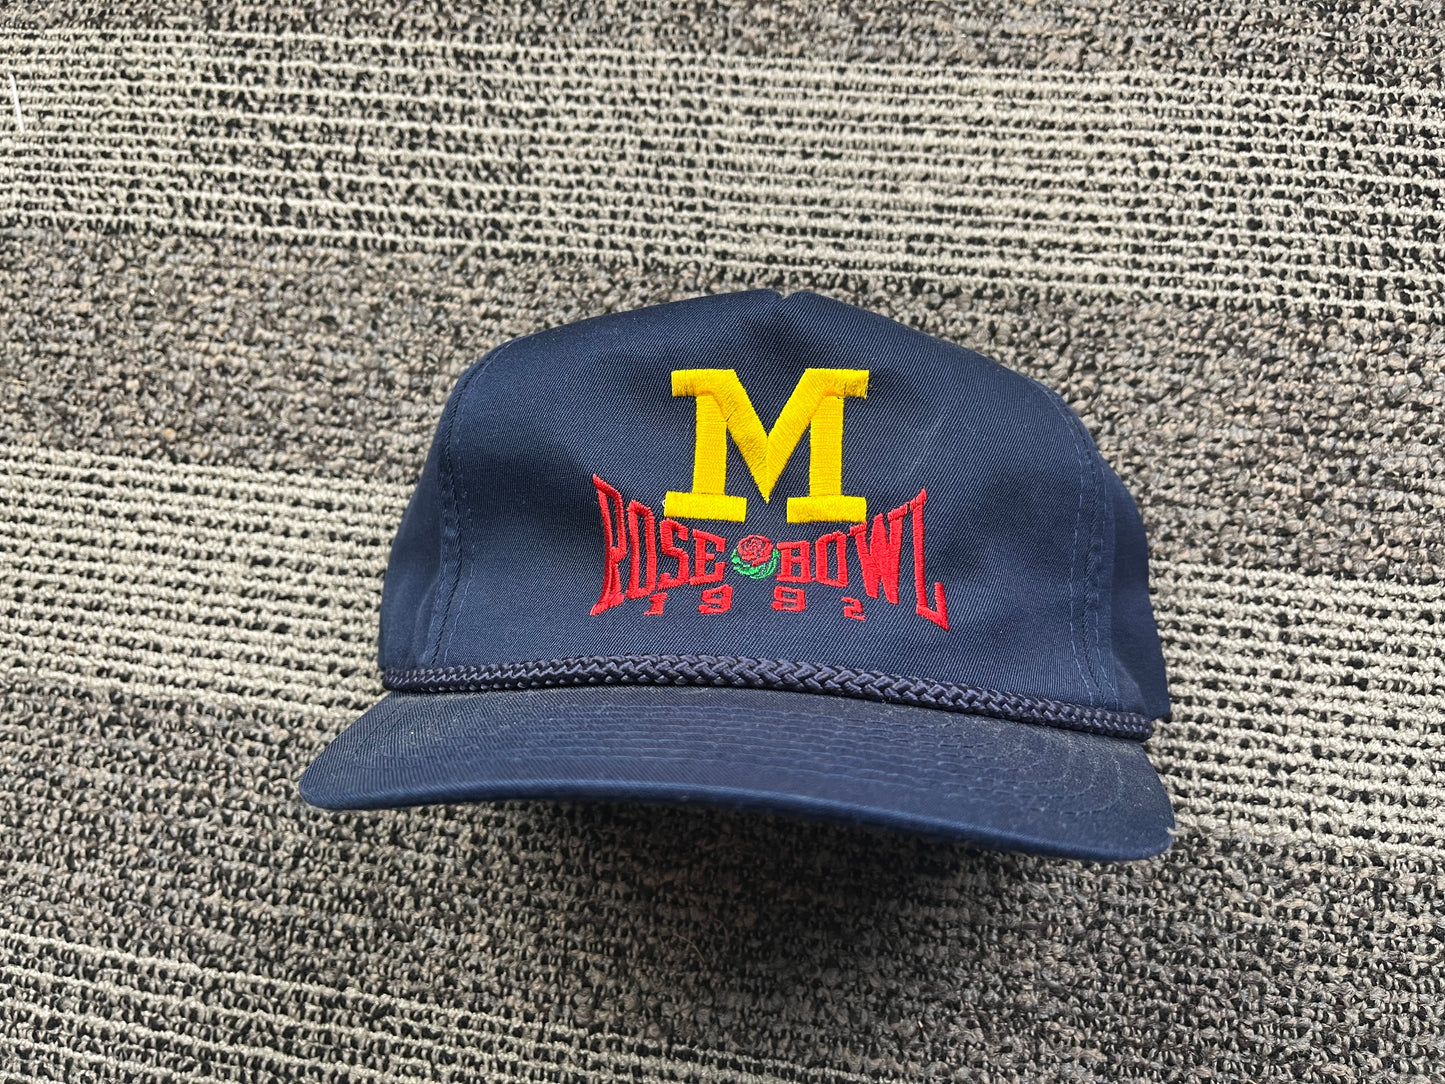 Vintage Michigan Rose Bowl Hat 